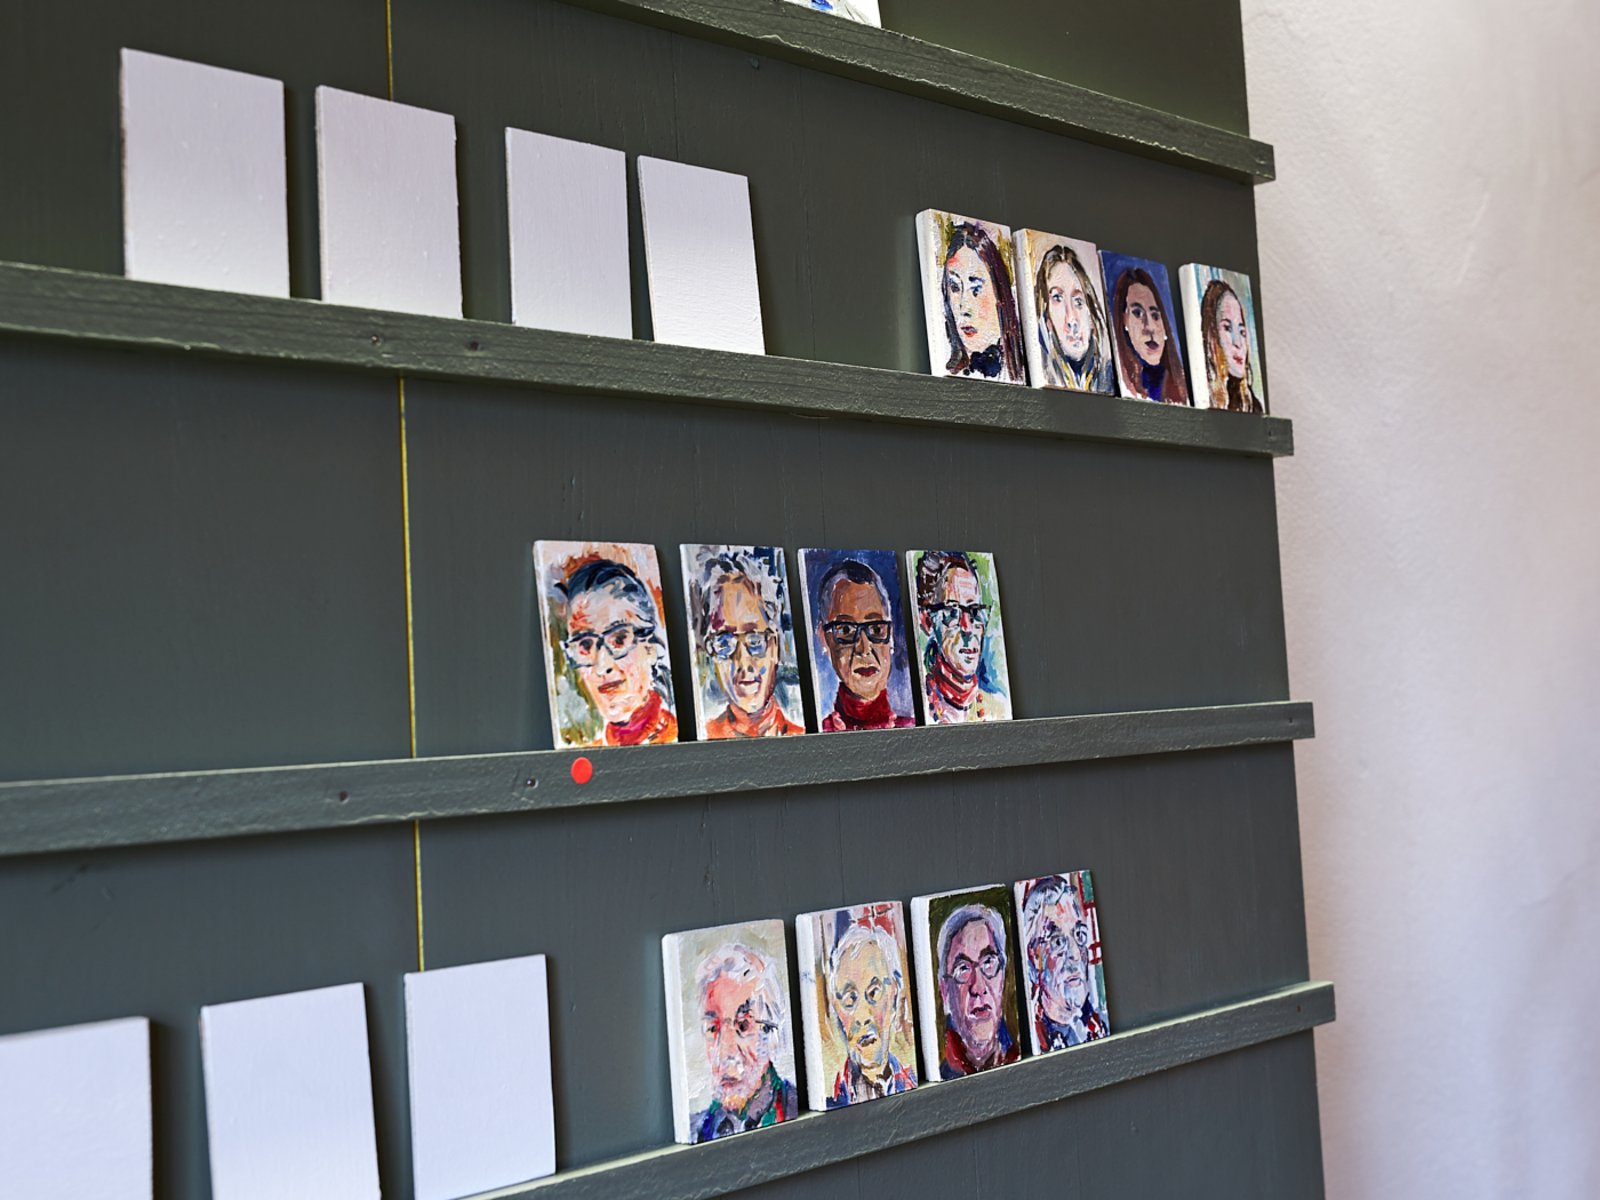 Porträtsalon im Rahmen der Ausstellung Malerei? Malerei!, Haus zur Glocke, 2019 (Foto: Kaspar Schweizer)